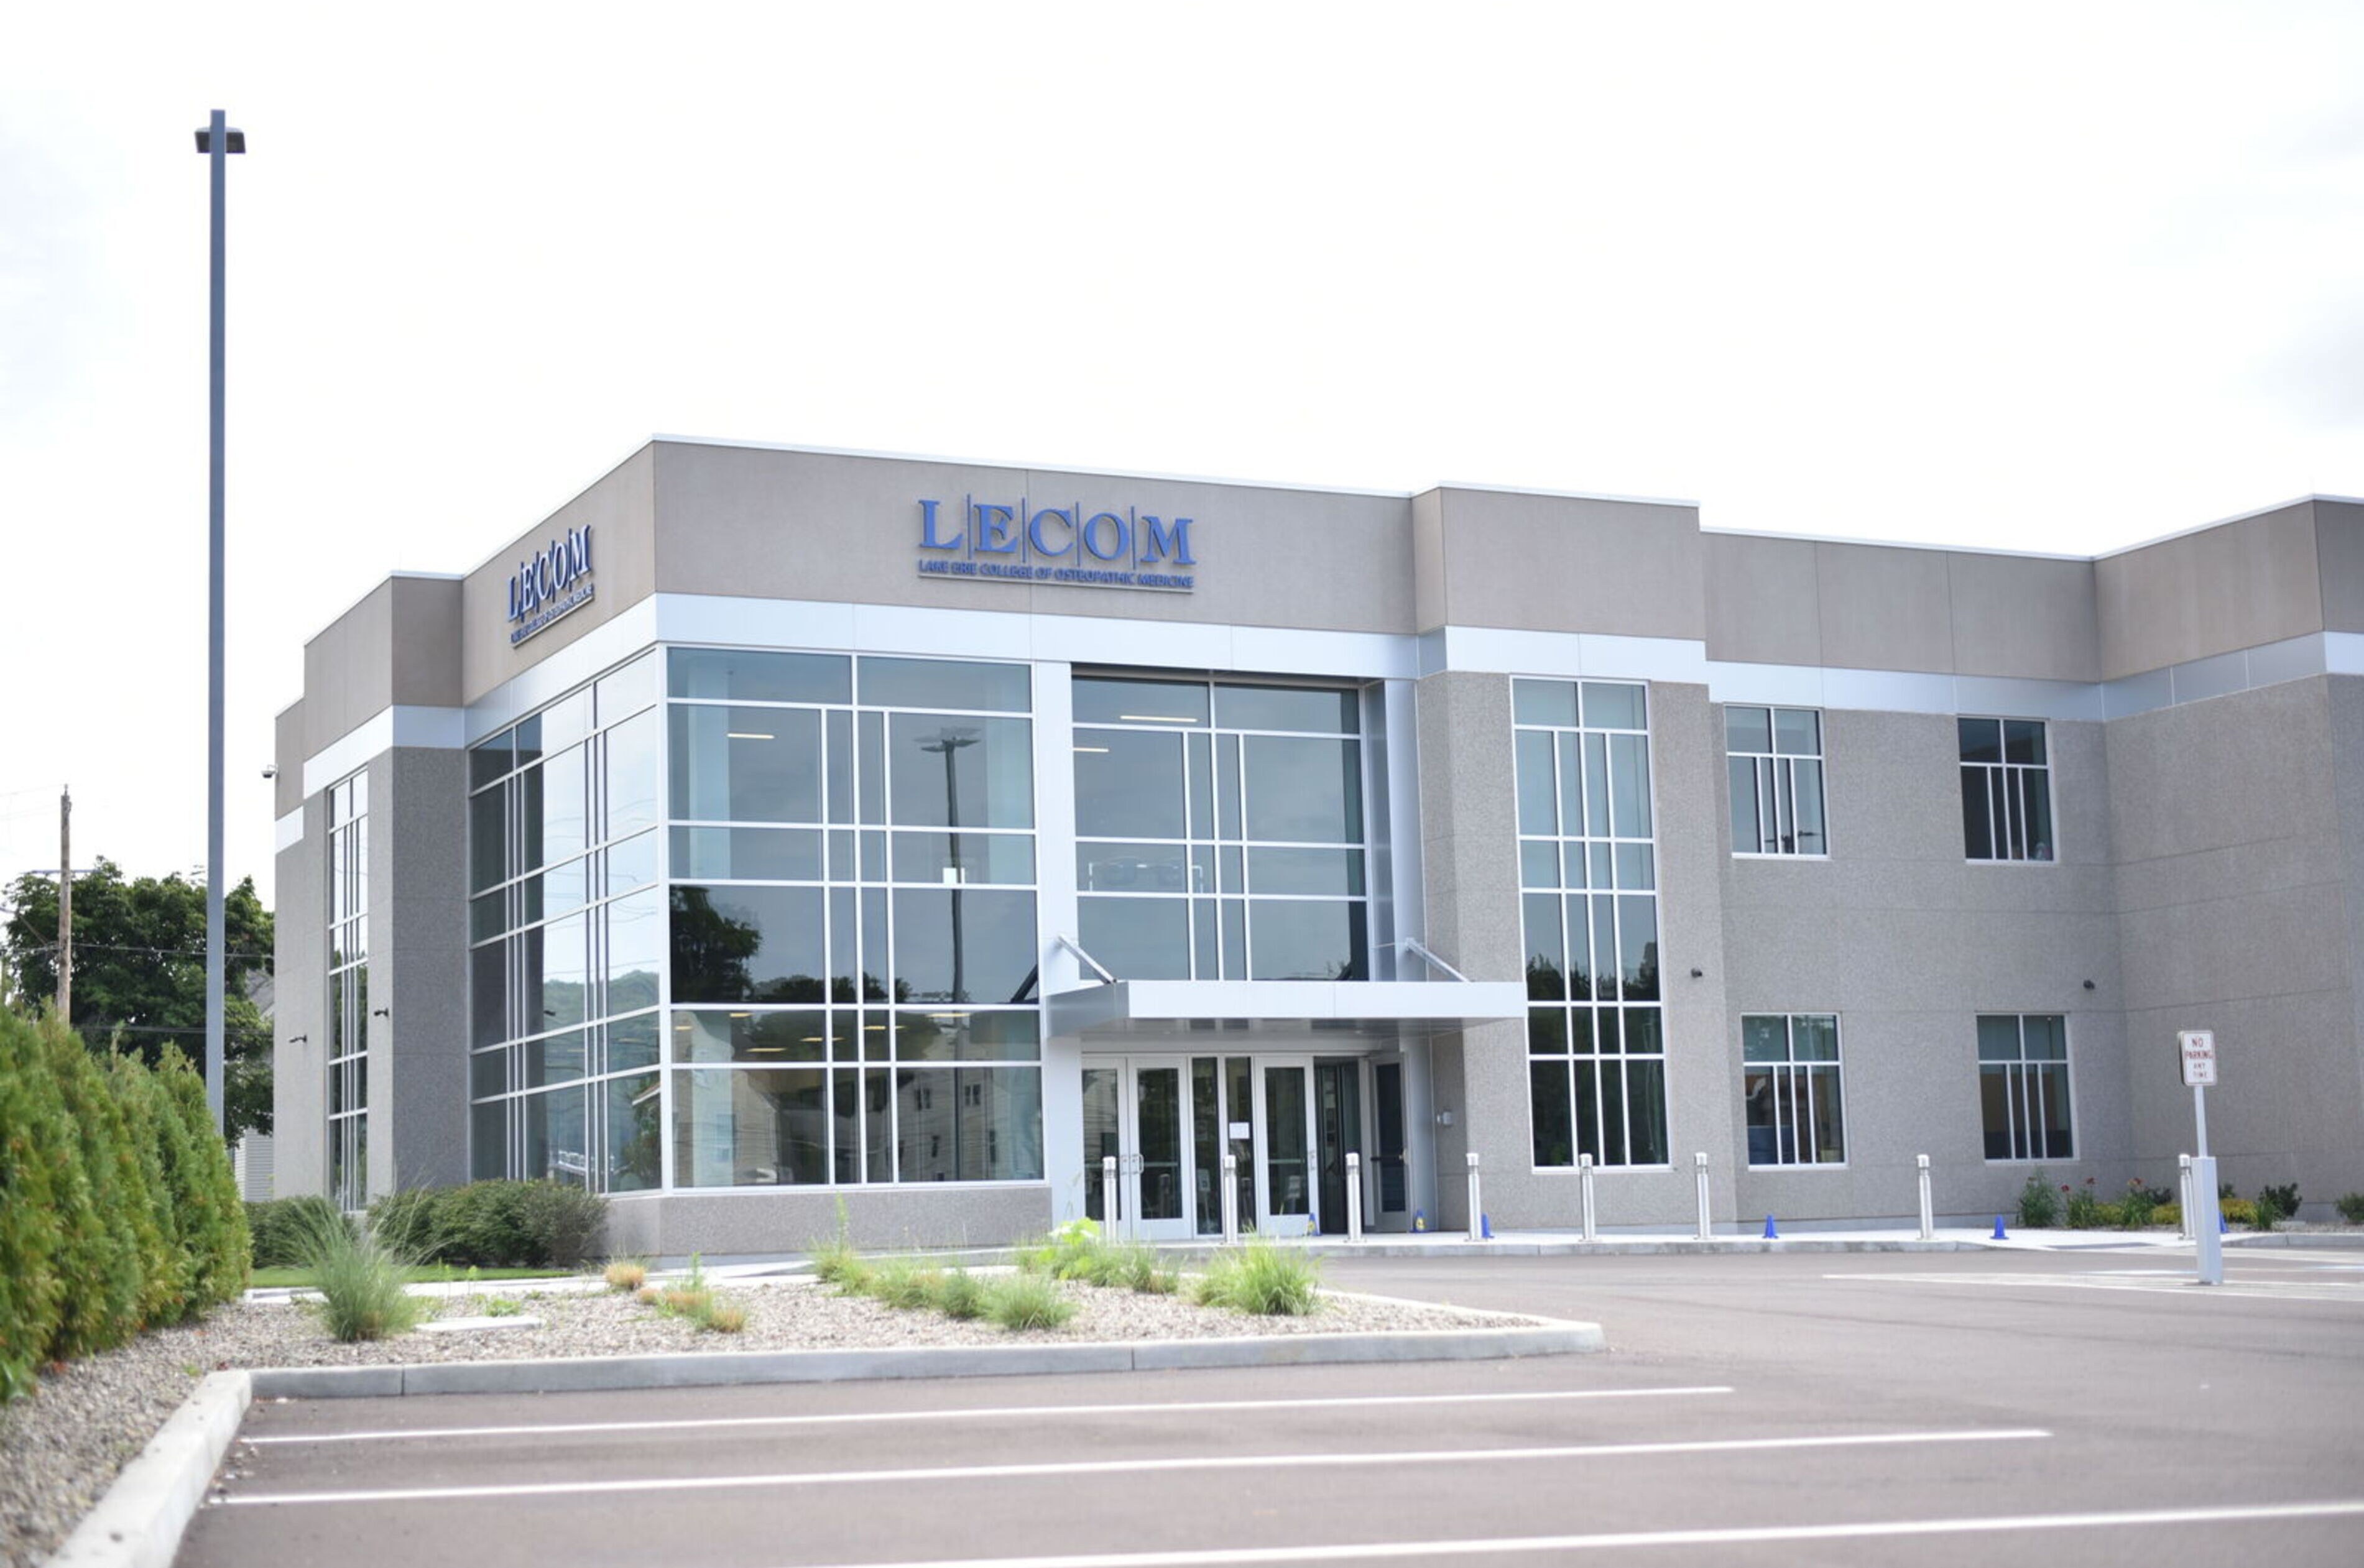 The exterior of the LECOM building